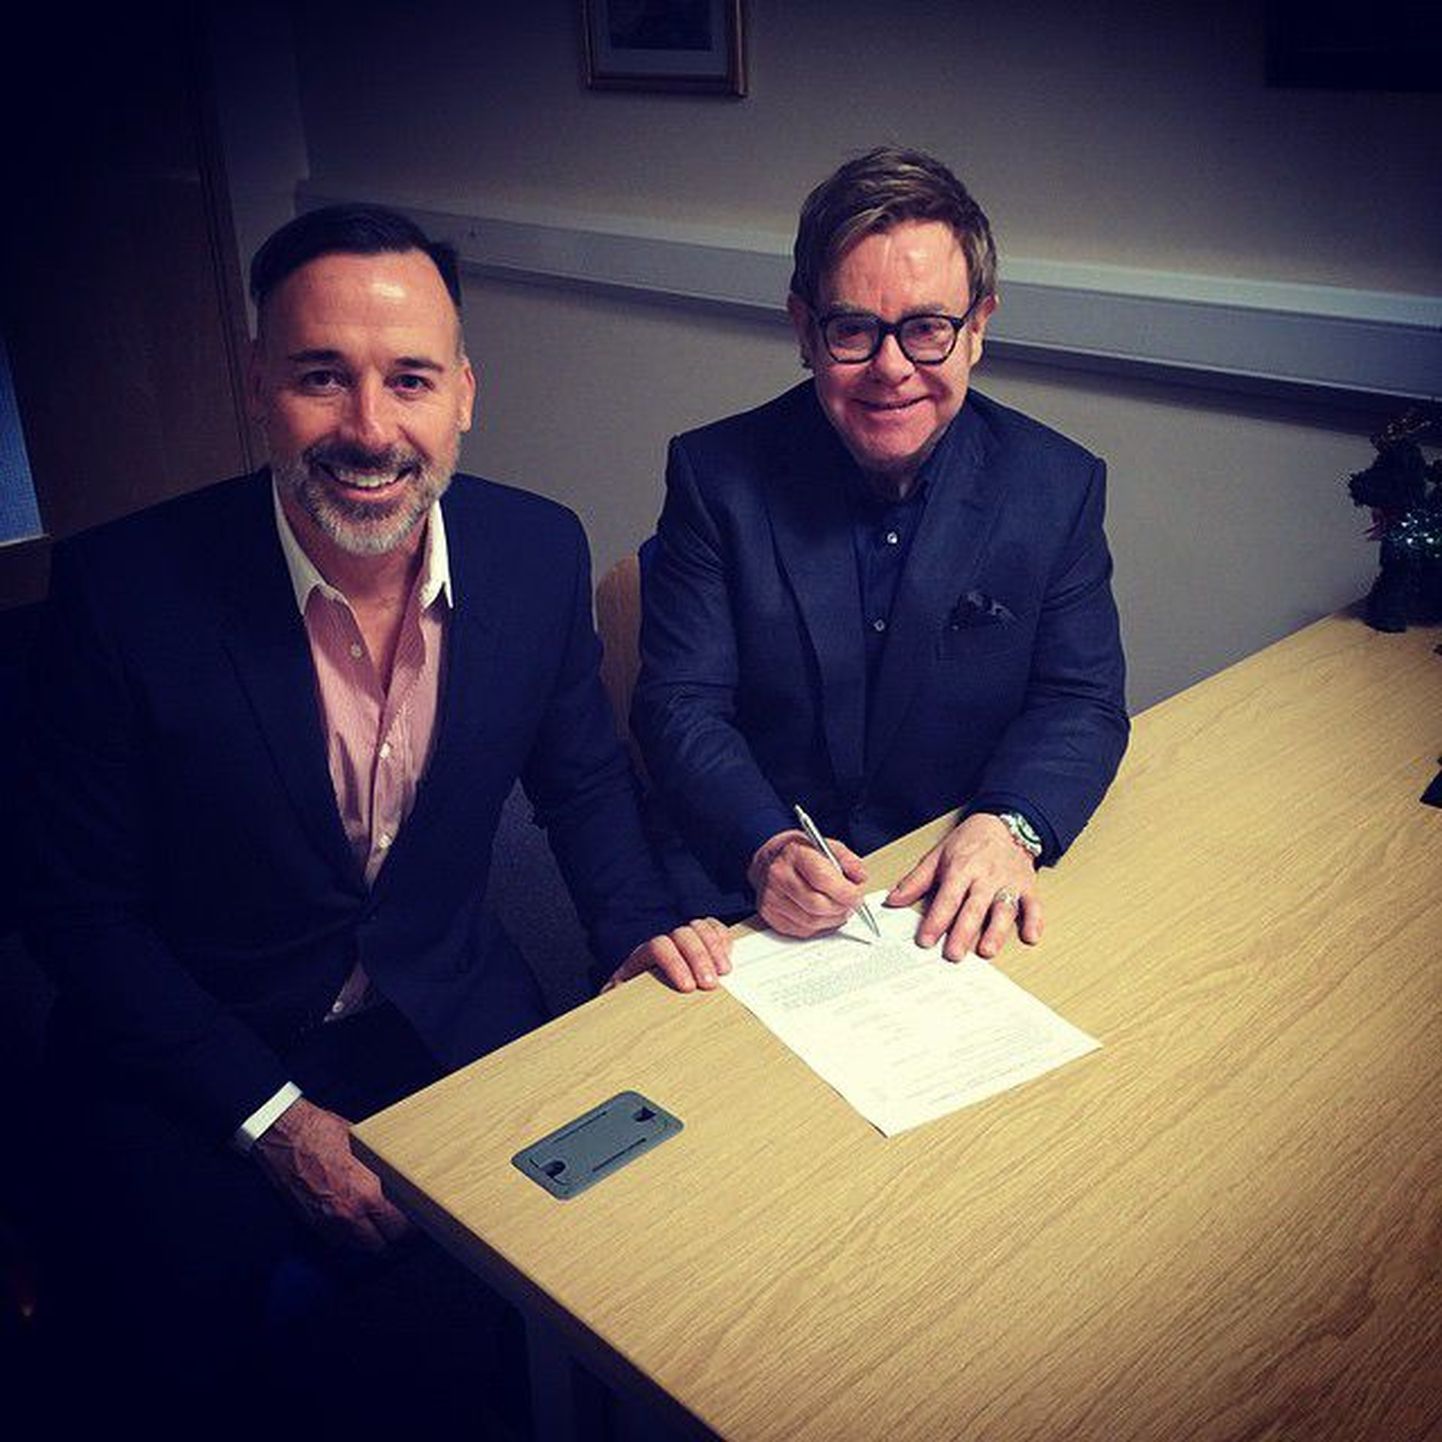 Briti laulja Elton John täna koos oma pikaajalise partneri David Furnishiga abiellumisdokumenti allkirjastamas.